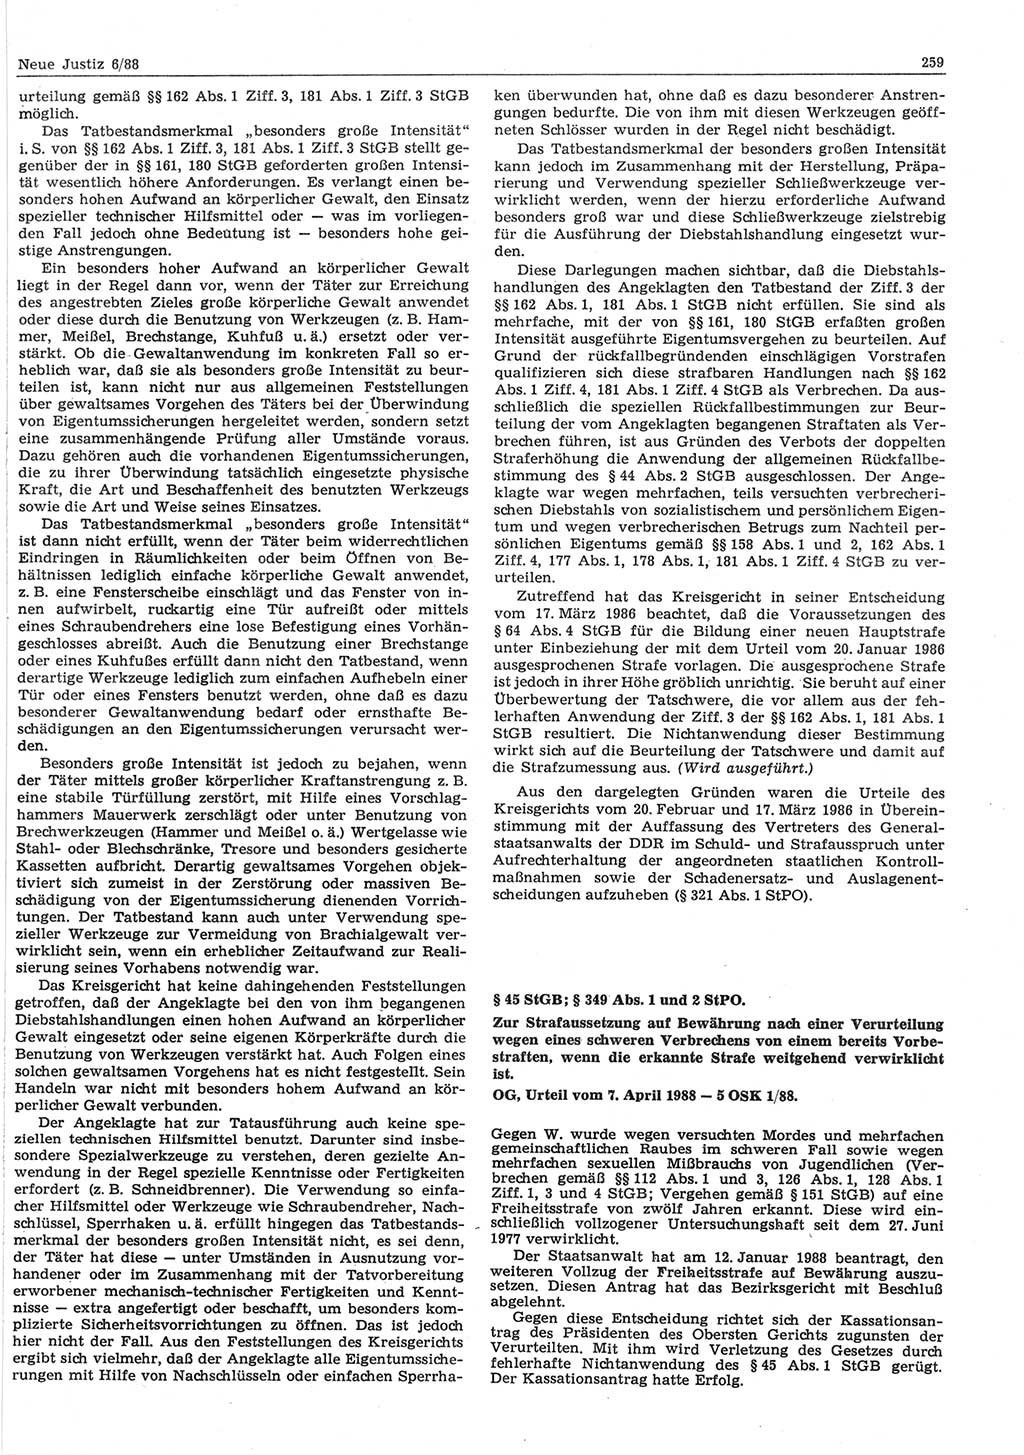 Neue Justiz (NJ), Zeitschrift für sozialistisches Recht und Gesetzlichkeit [Deutsche Demokratische Republik (DDR)], 42. Jahrgang 1988, Seite 259 (NJ DDR 1988, S. 259)